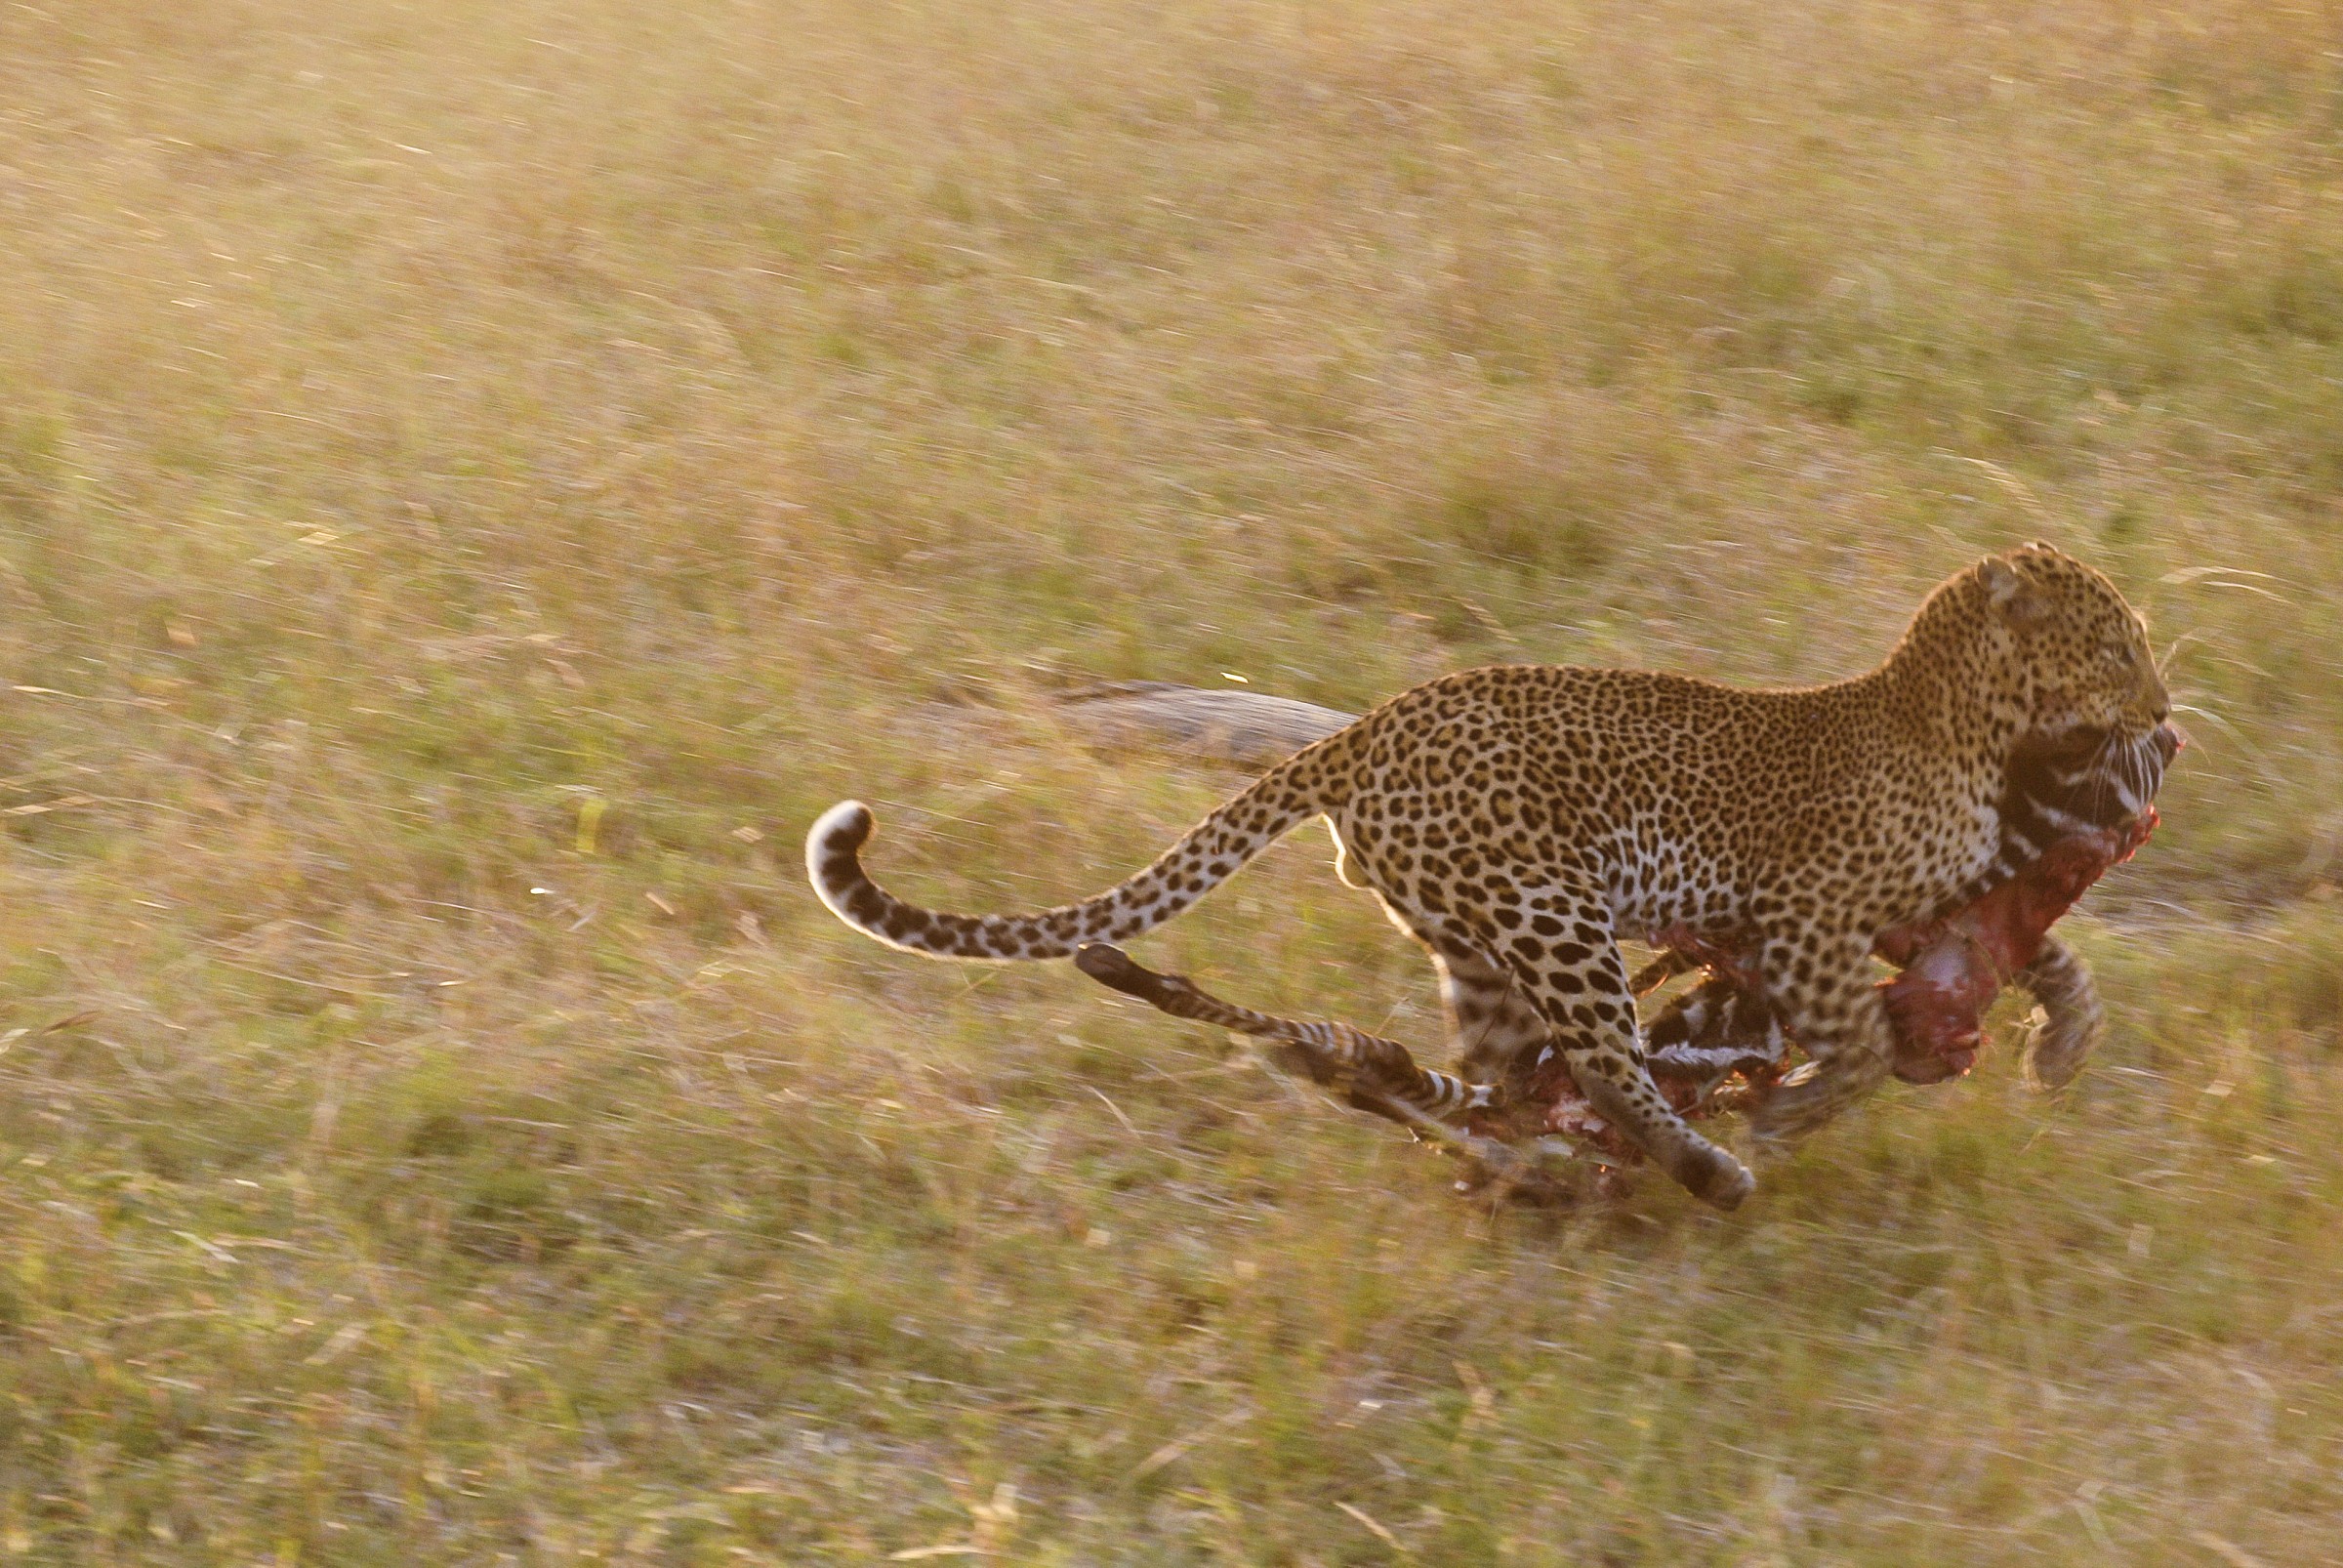 Leopard on the run...